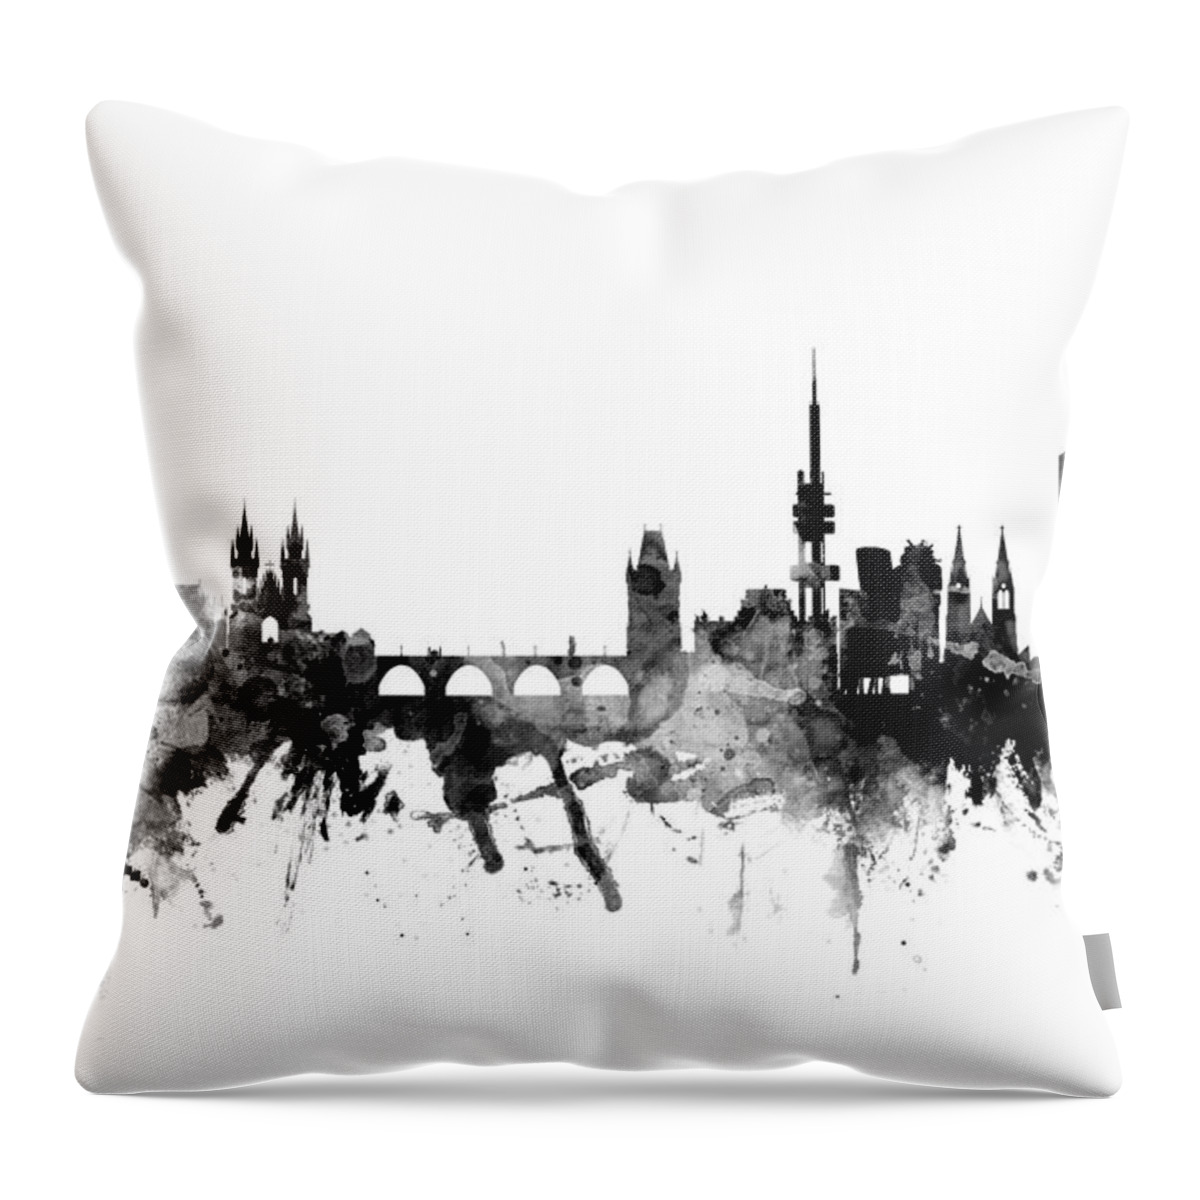 Czech Republic Throw Pillow featuring the digital art Prague Praha Czech Republic Skyline #2 by Michael Tompsett